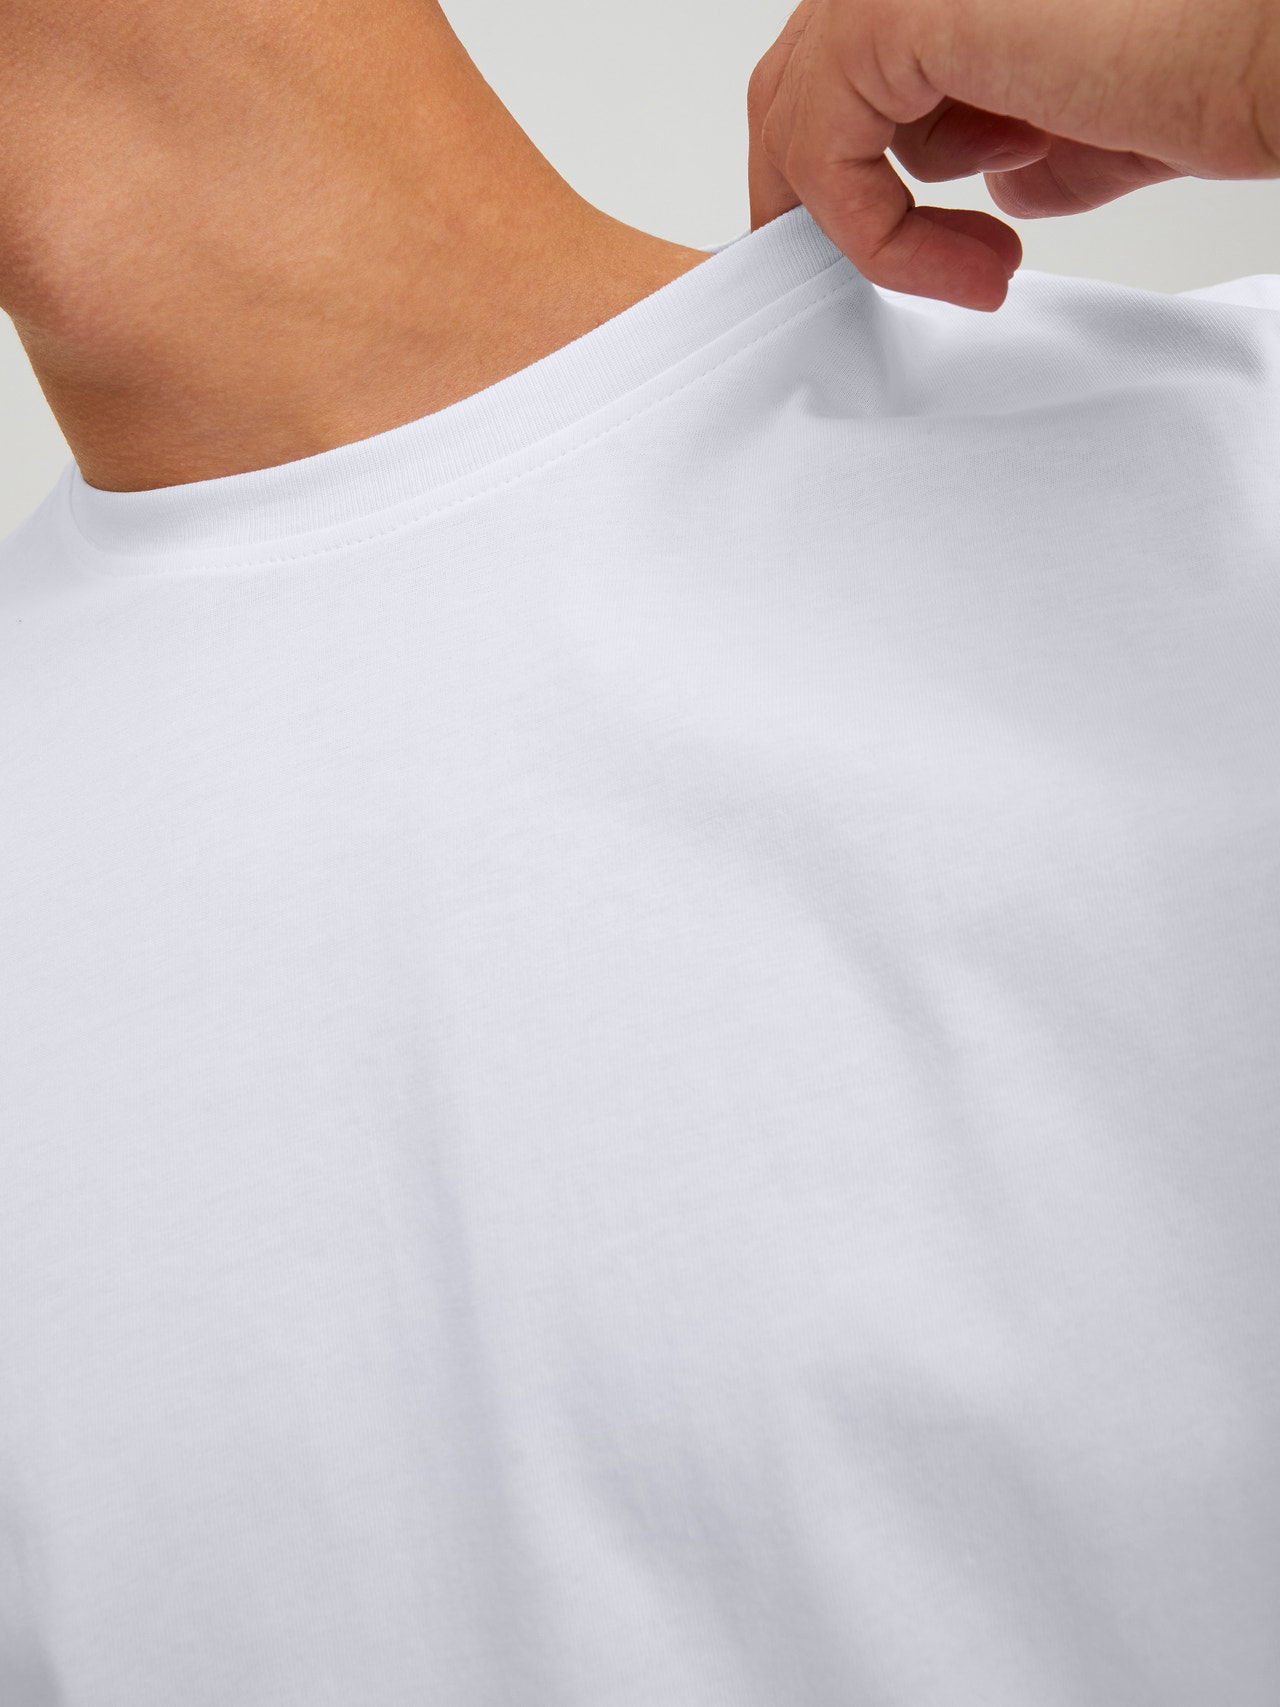 Jack & Jones T-shirt Estampar Decote Redondo -White - 12229431